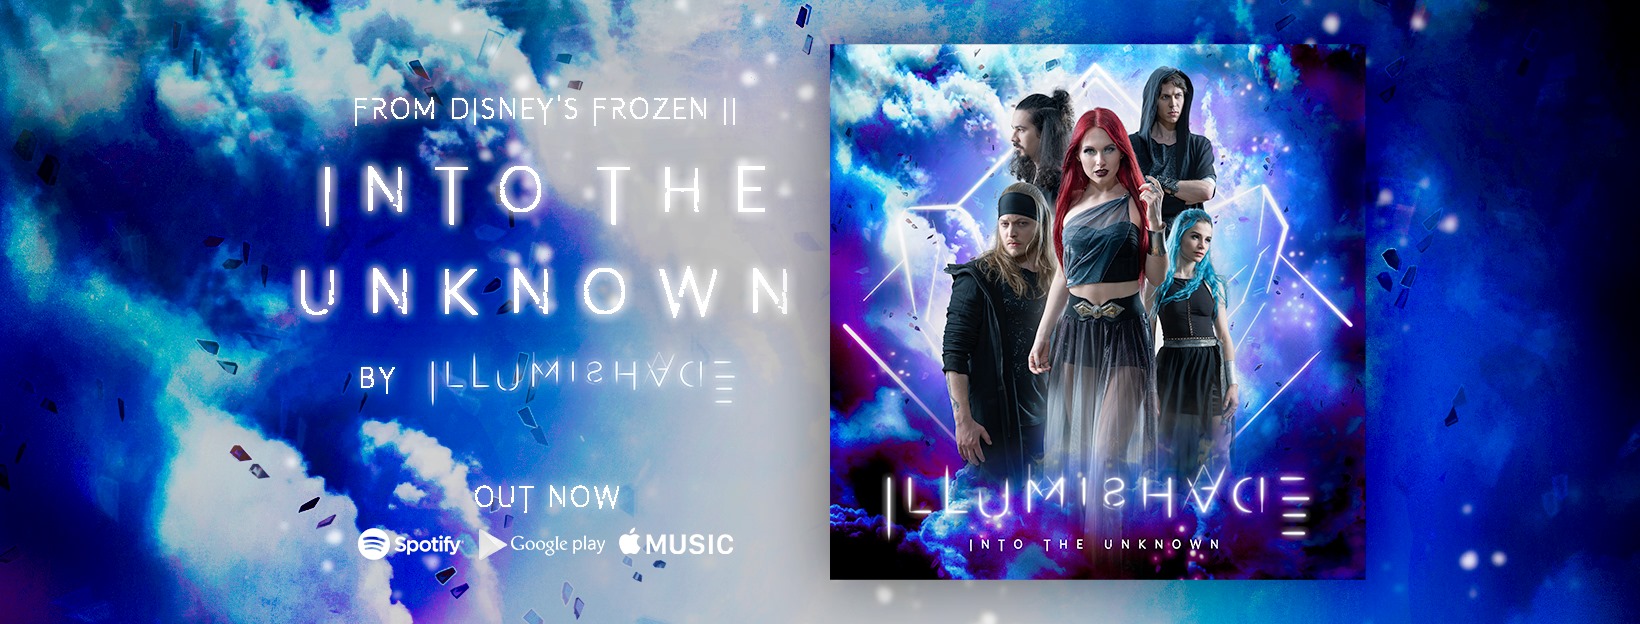 ILLUMISHADE lanza cover de película Frozen